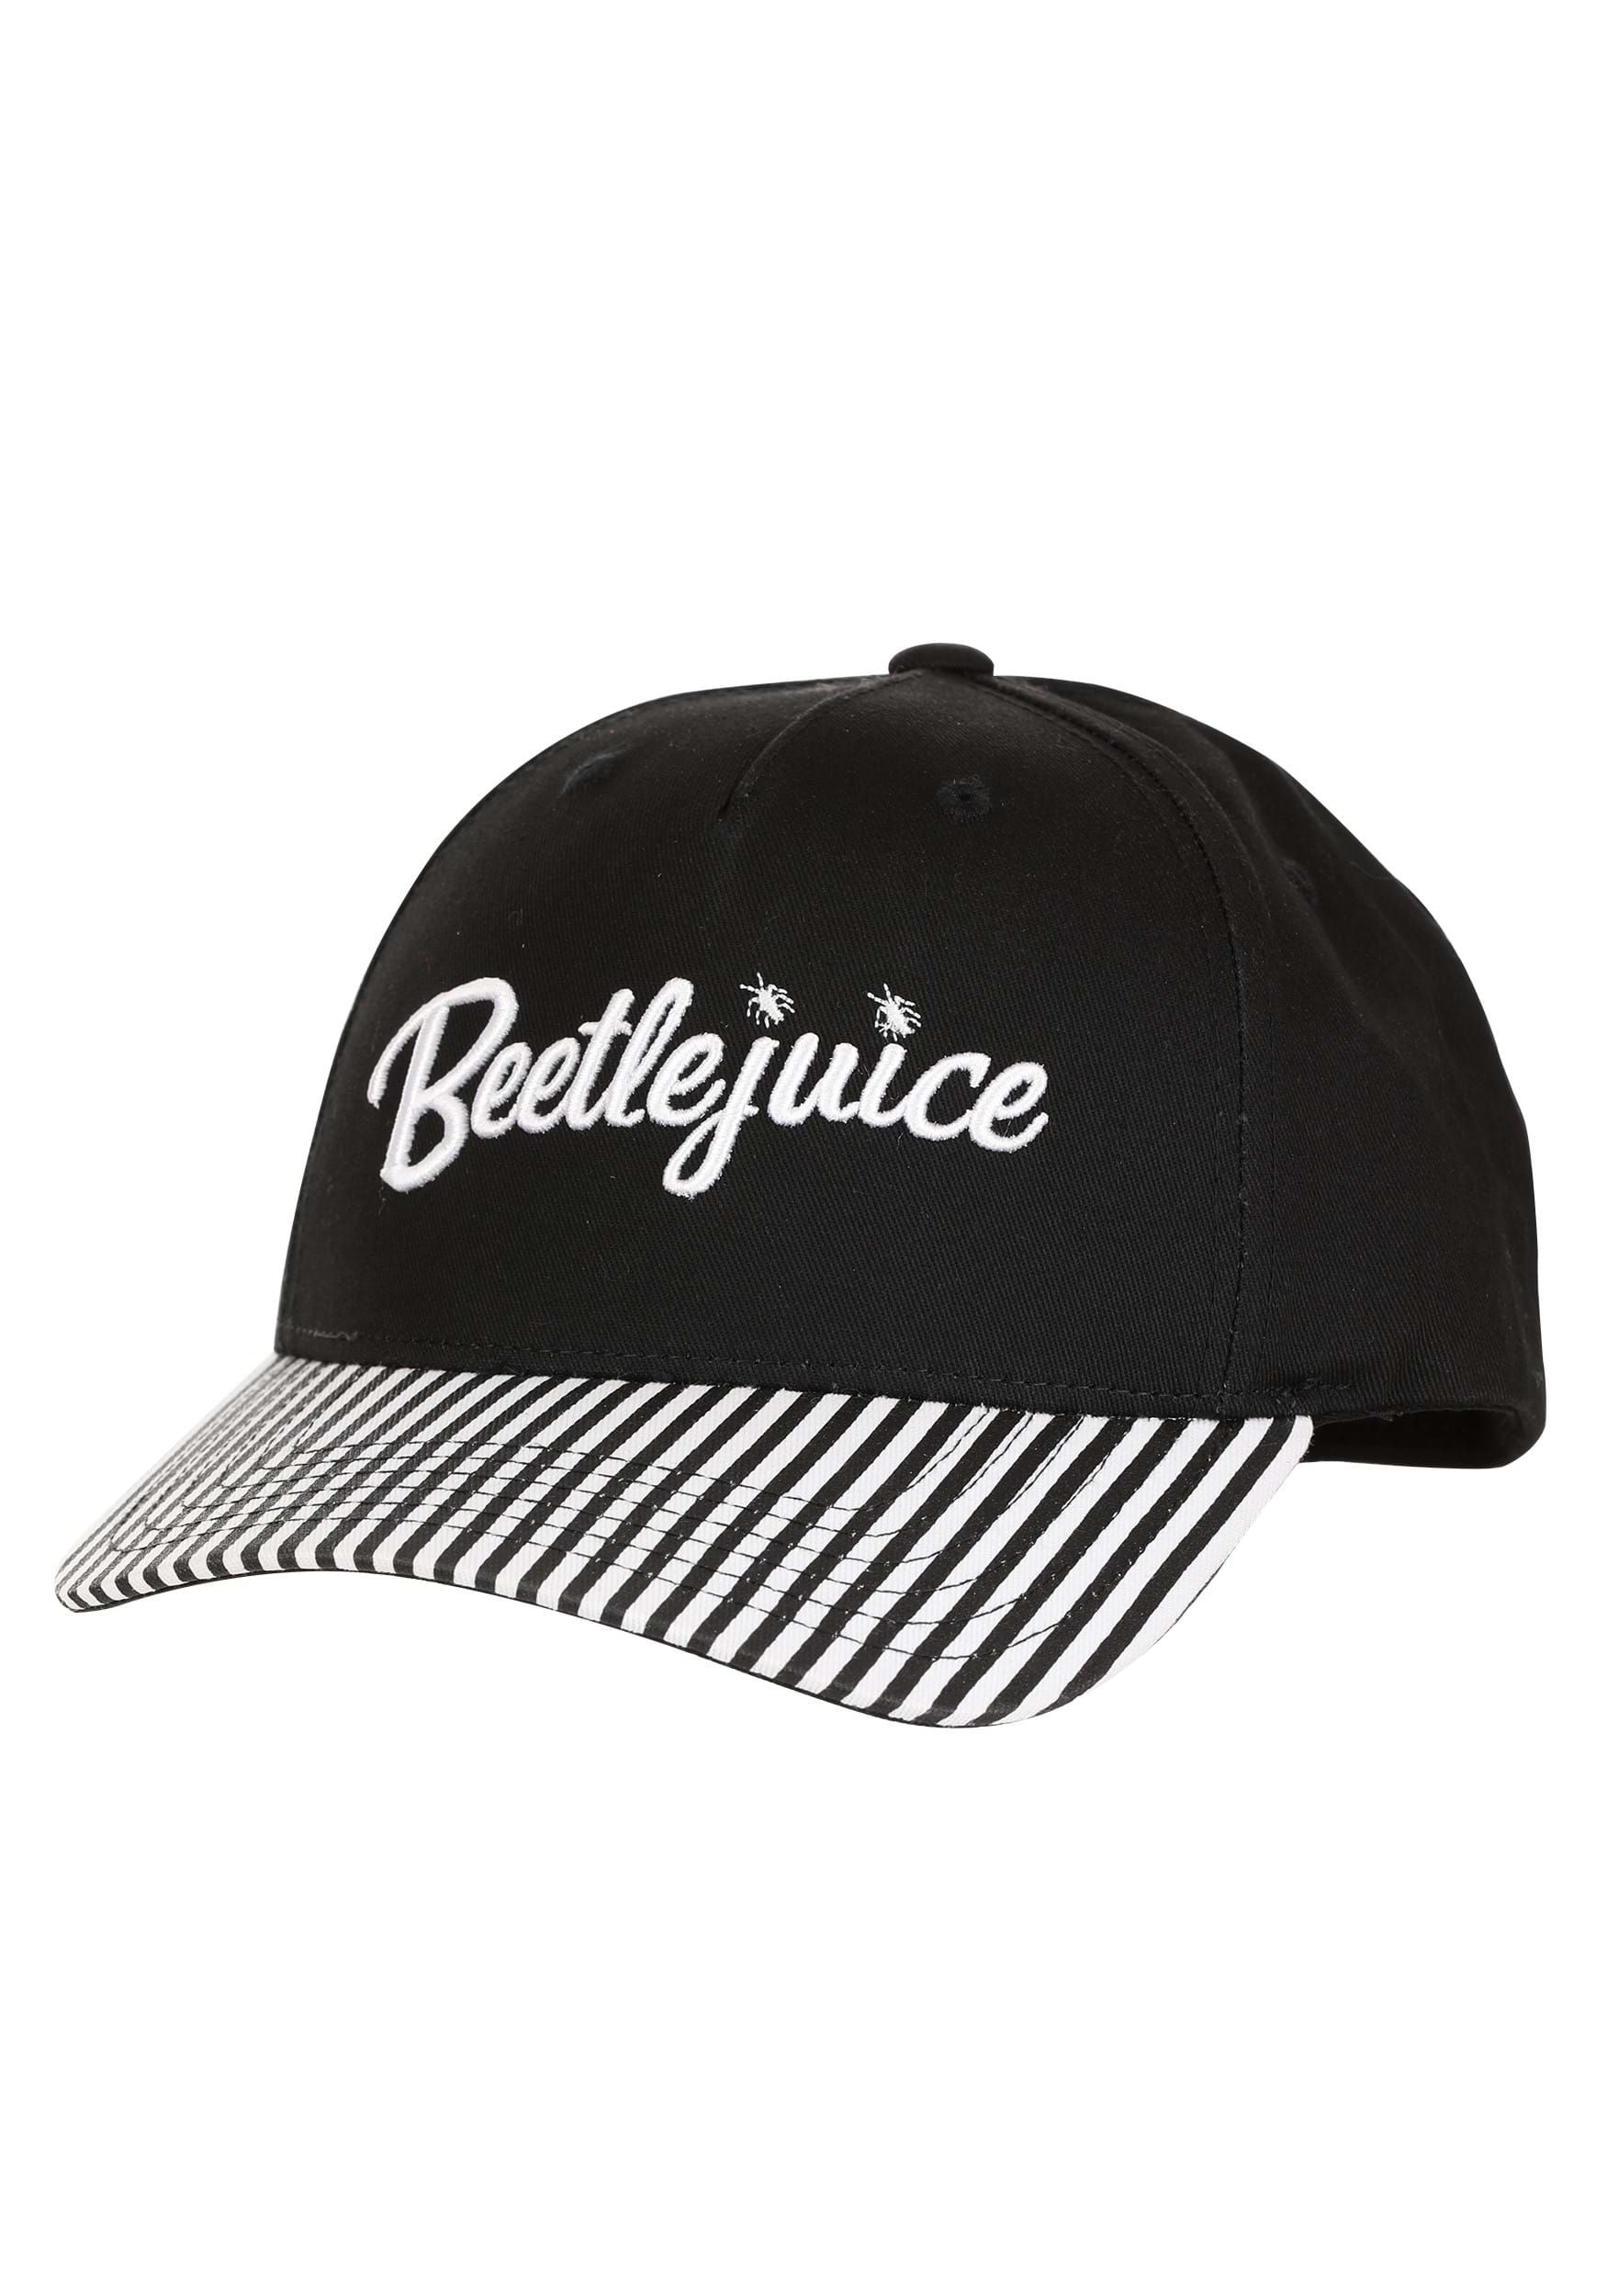 Adult Beetlejuice Cosplay Hat , Beetlejuice Accessories